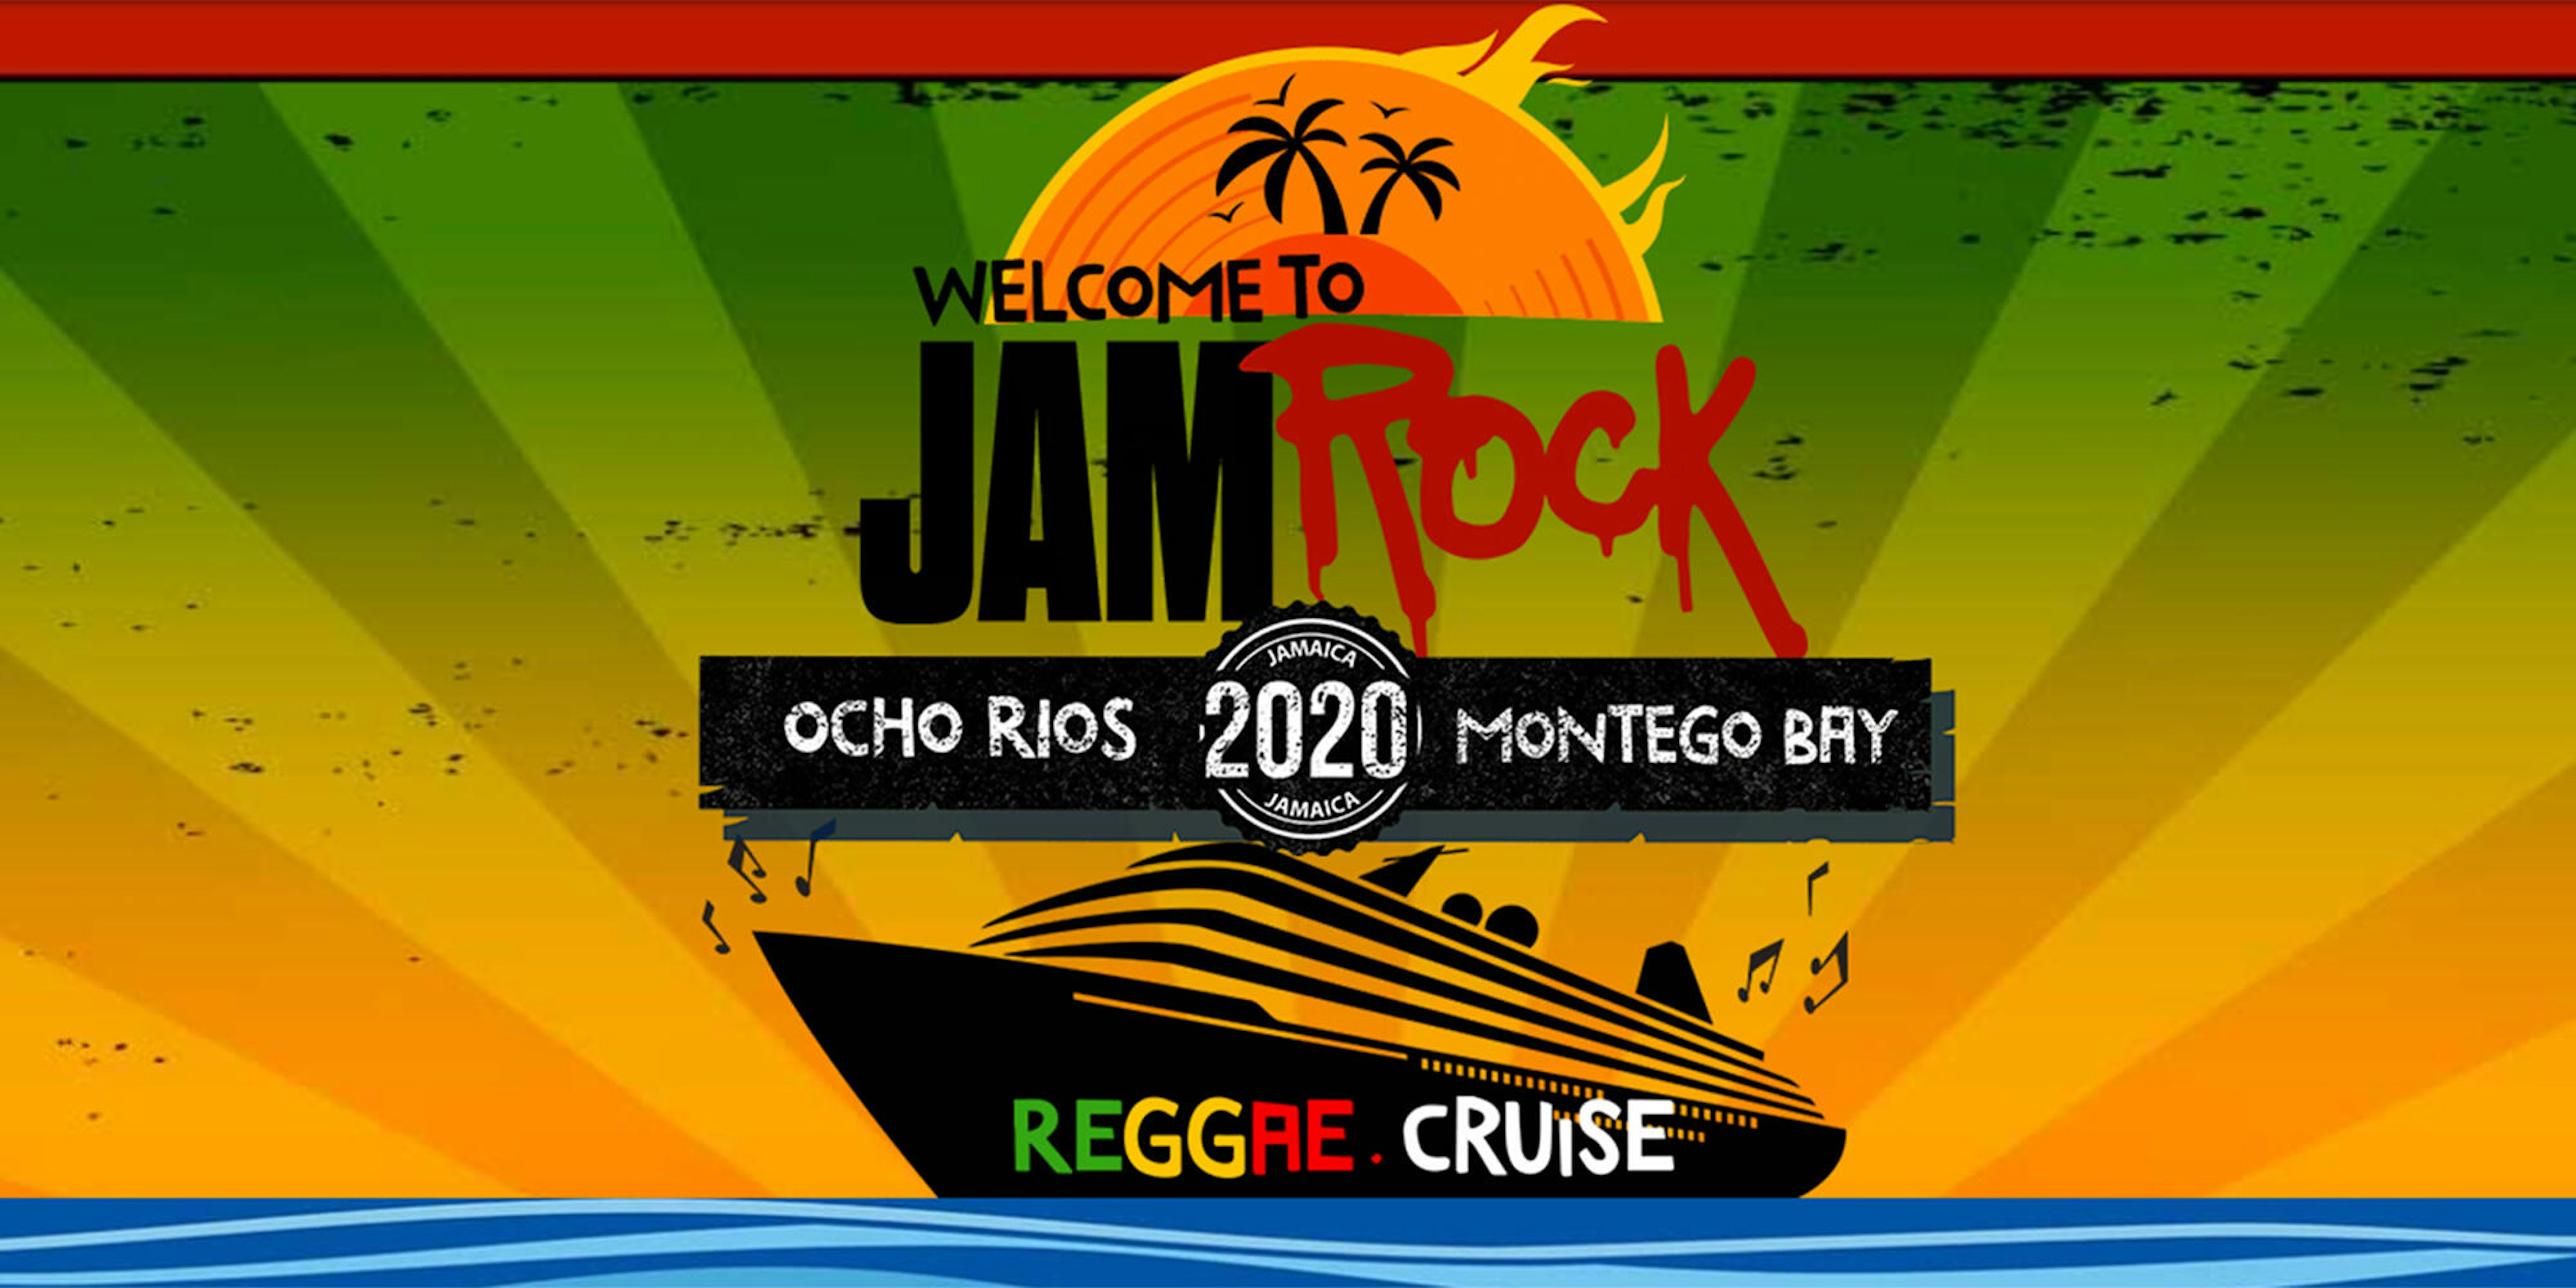 jamrock cruise 2020 prices